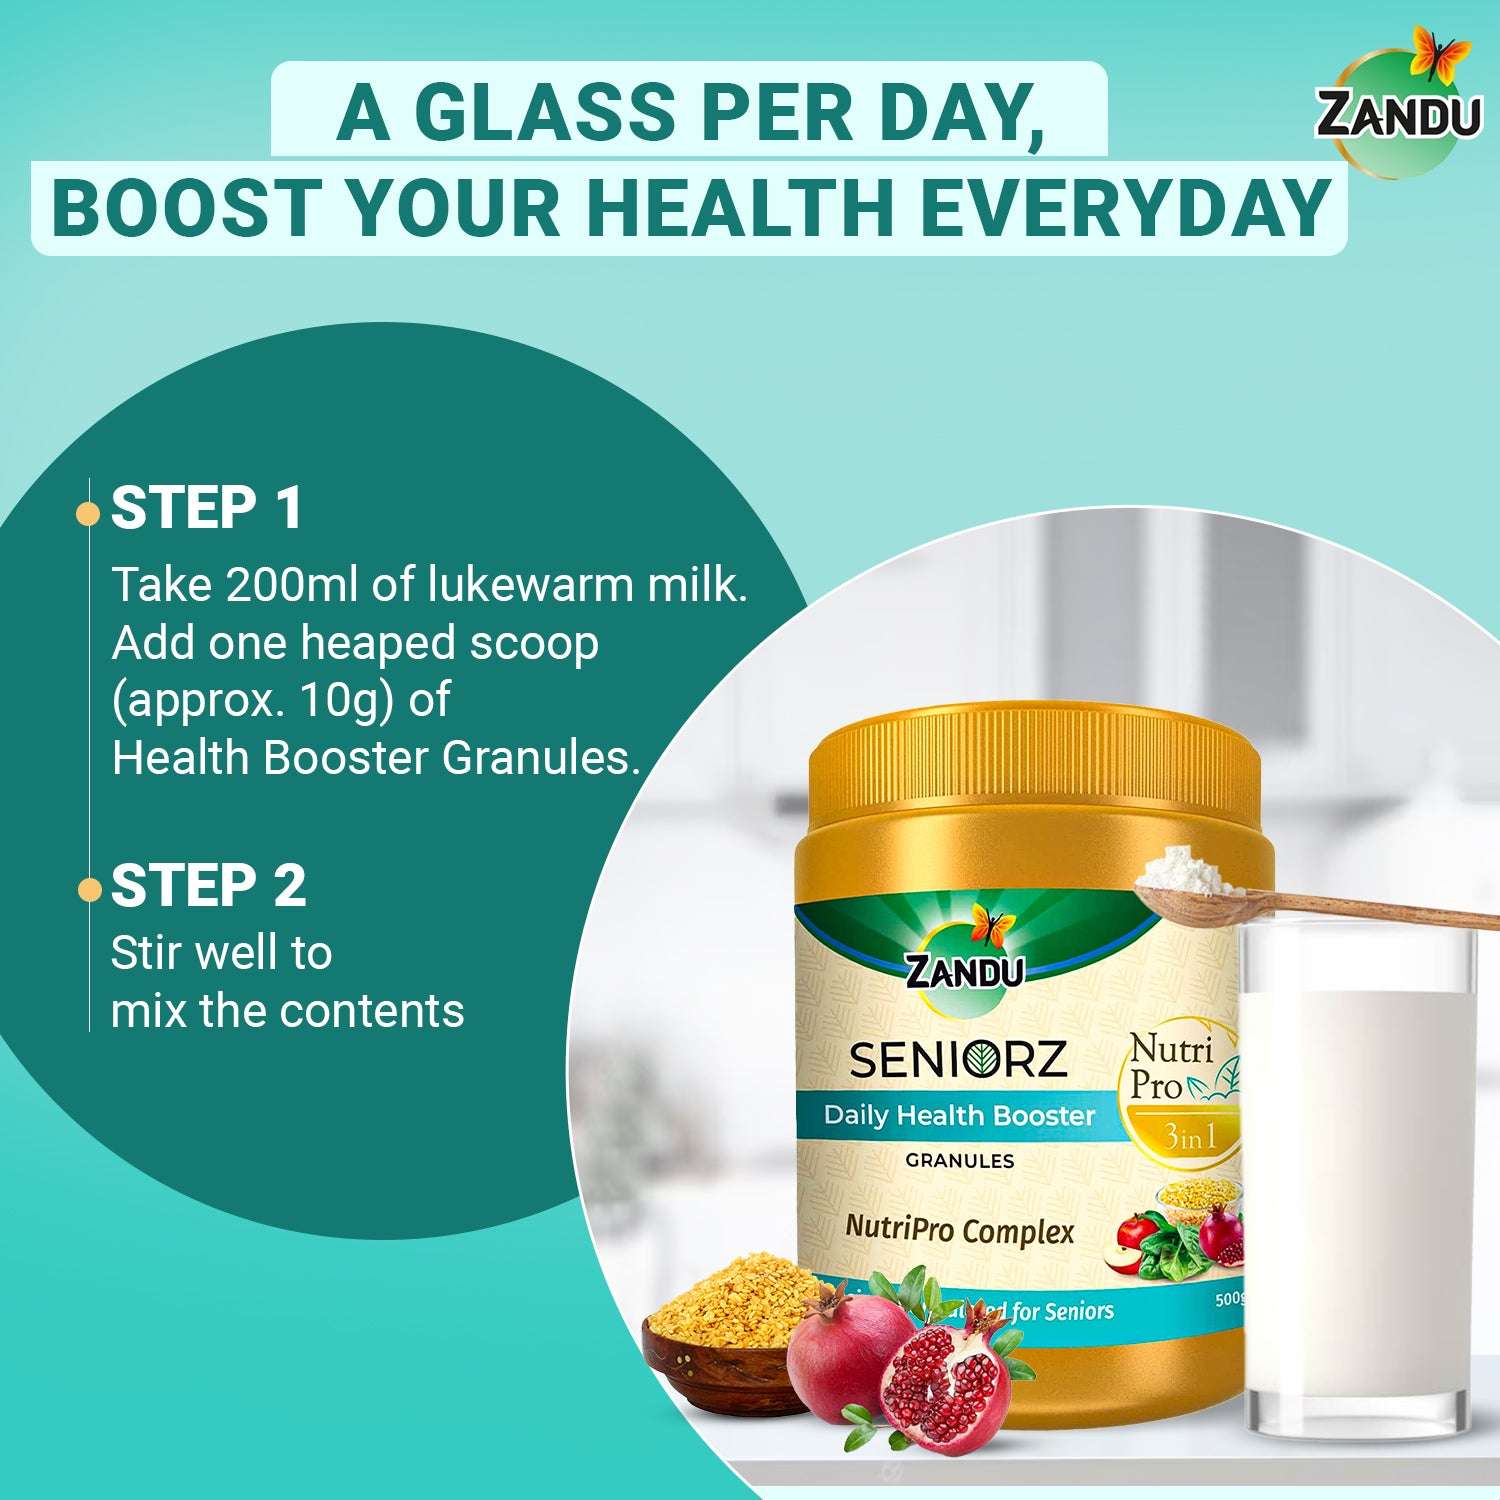 How to use Zandu Health Booster granules?